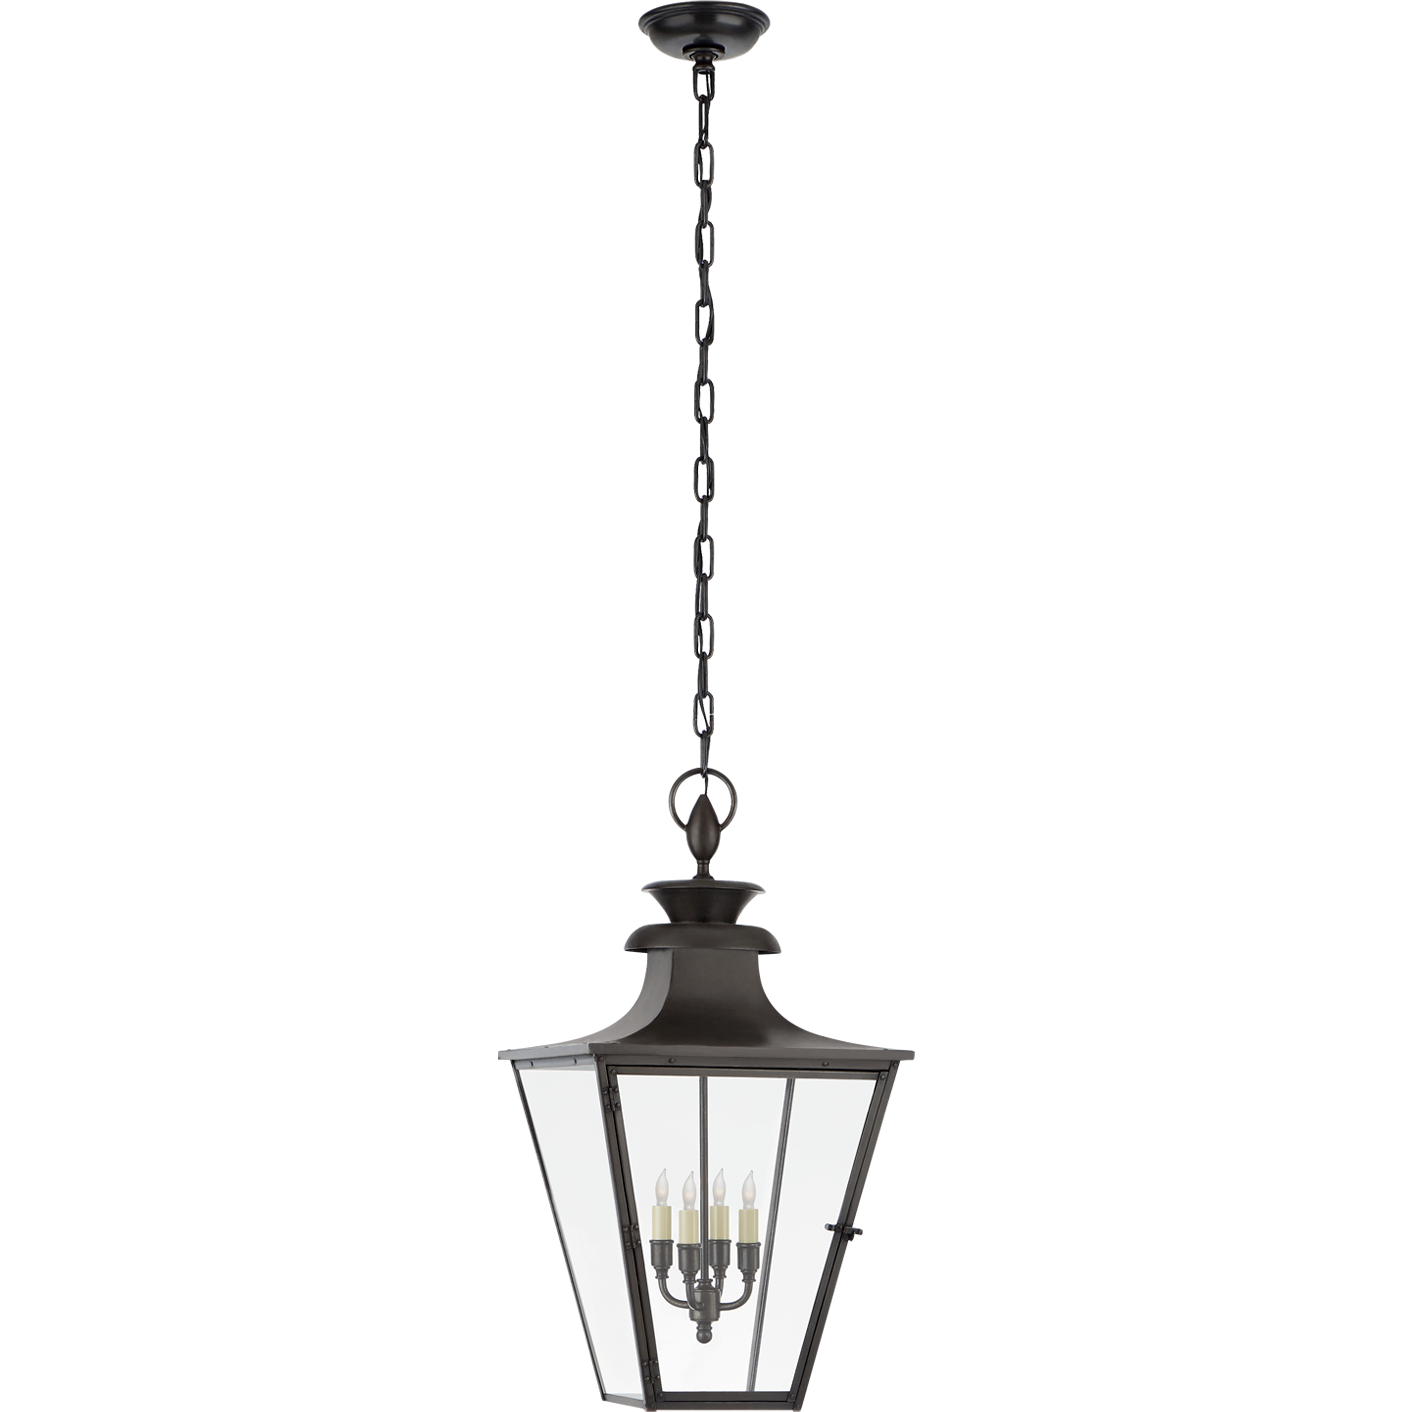 Albermarle Medium Hanging Lantern